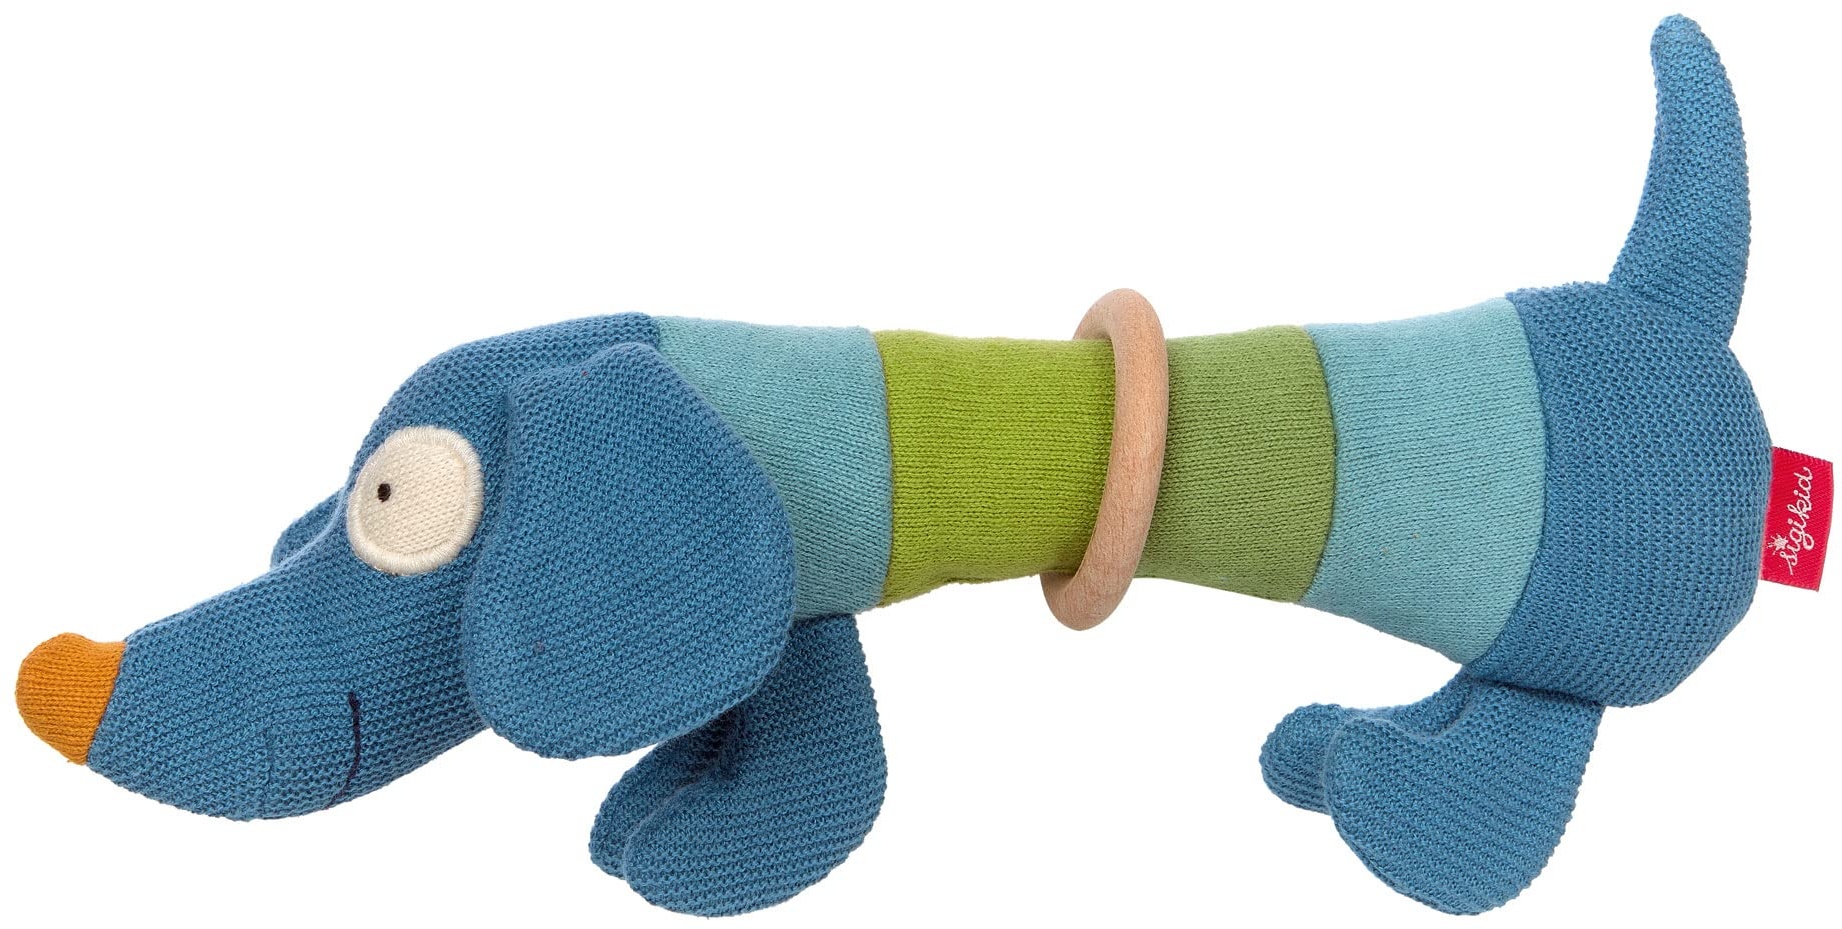 SIGIKID 39376 Strick-Greifling Hund Baby Strick Mädchen und Jungen Babyspielzeug empfohlen ab 3 Monaten blau/grün